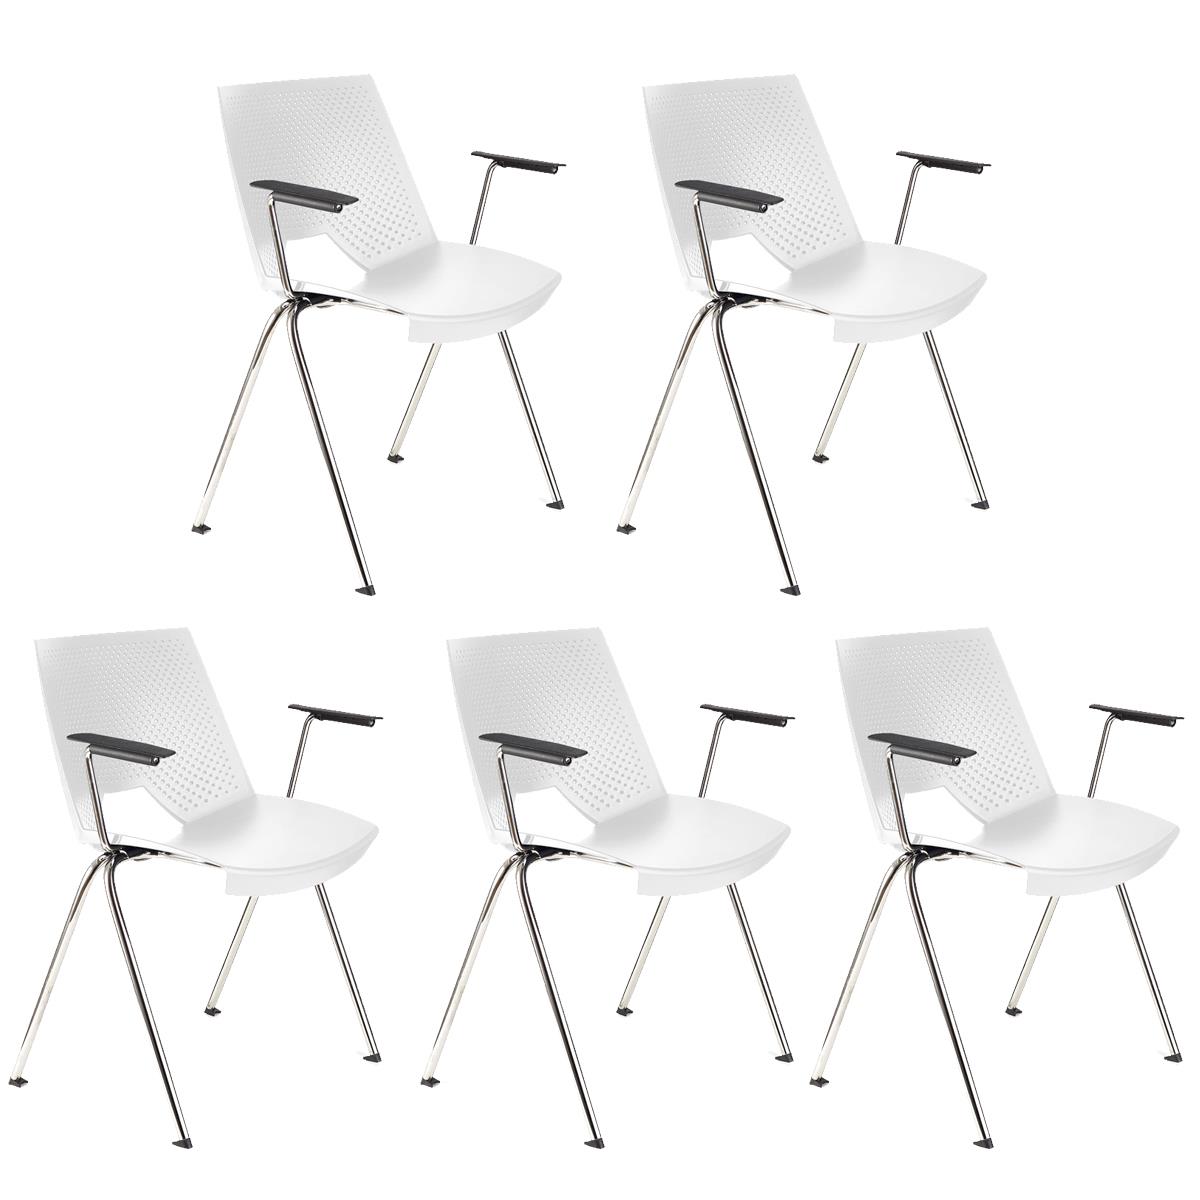 Lote de 5 sillas de Confidente ENZO CON BRAZOS, Cómodas y Prácticas, Apilables, Color Blanco